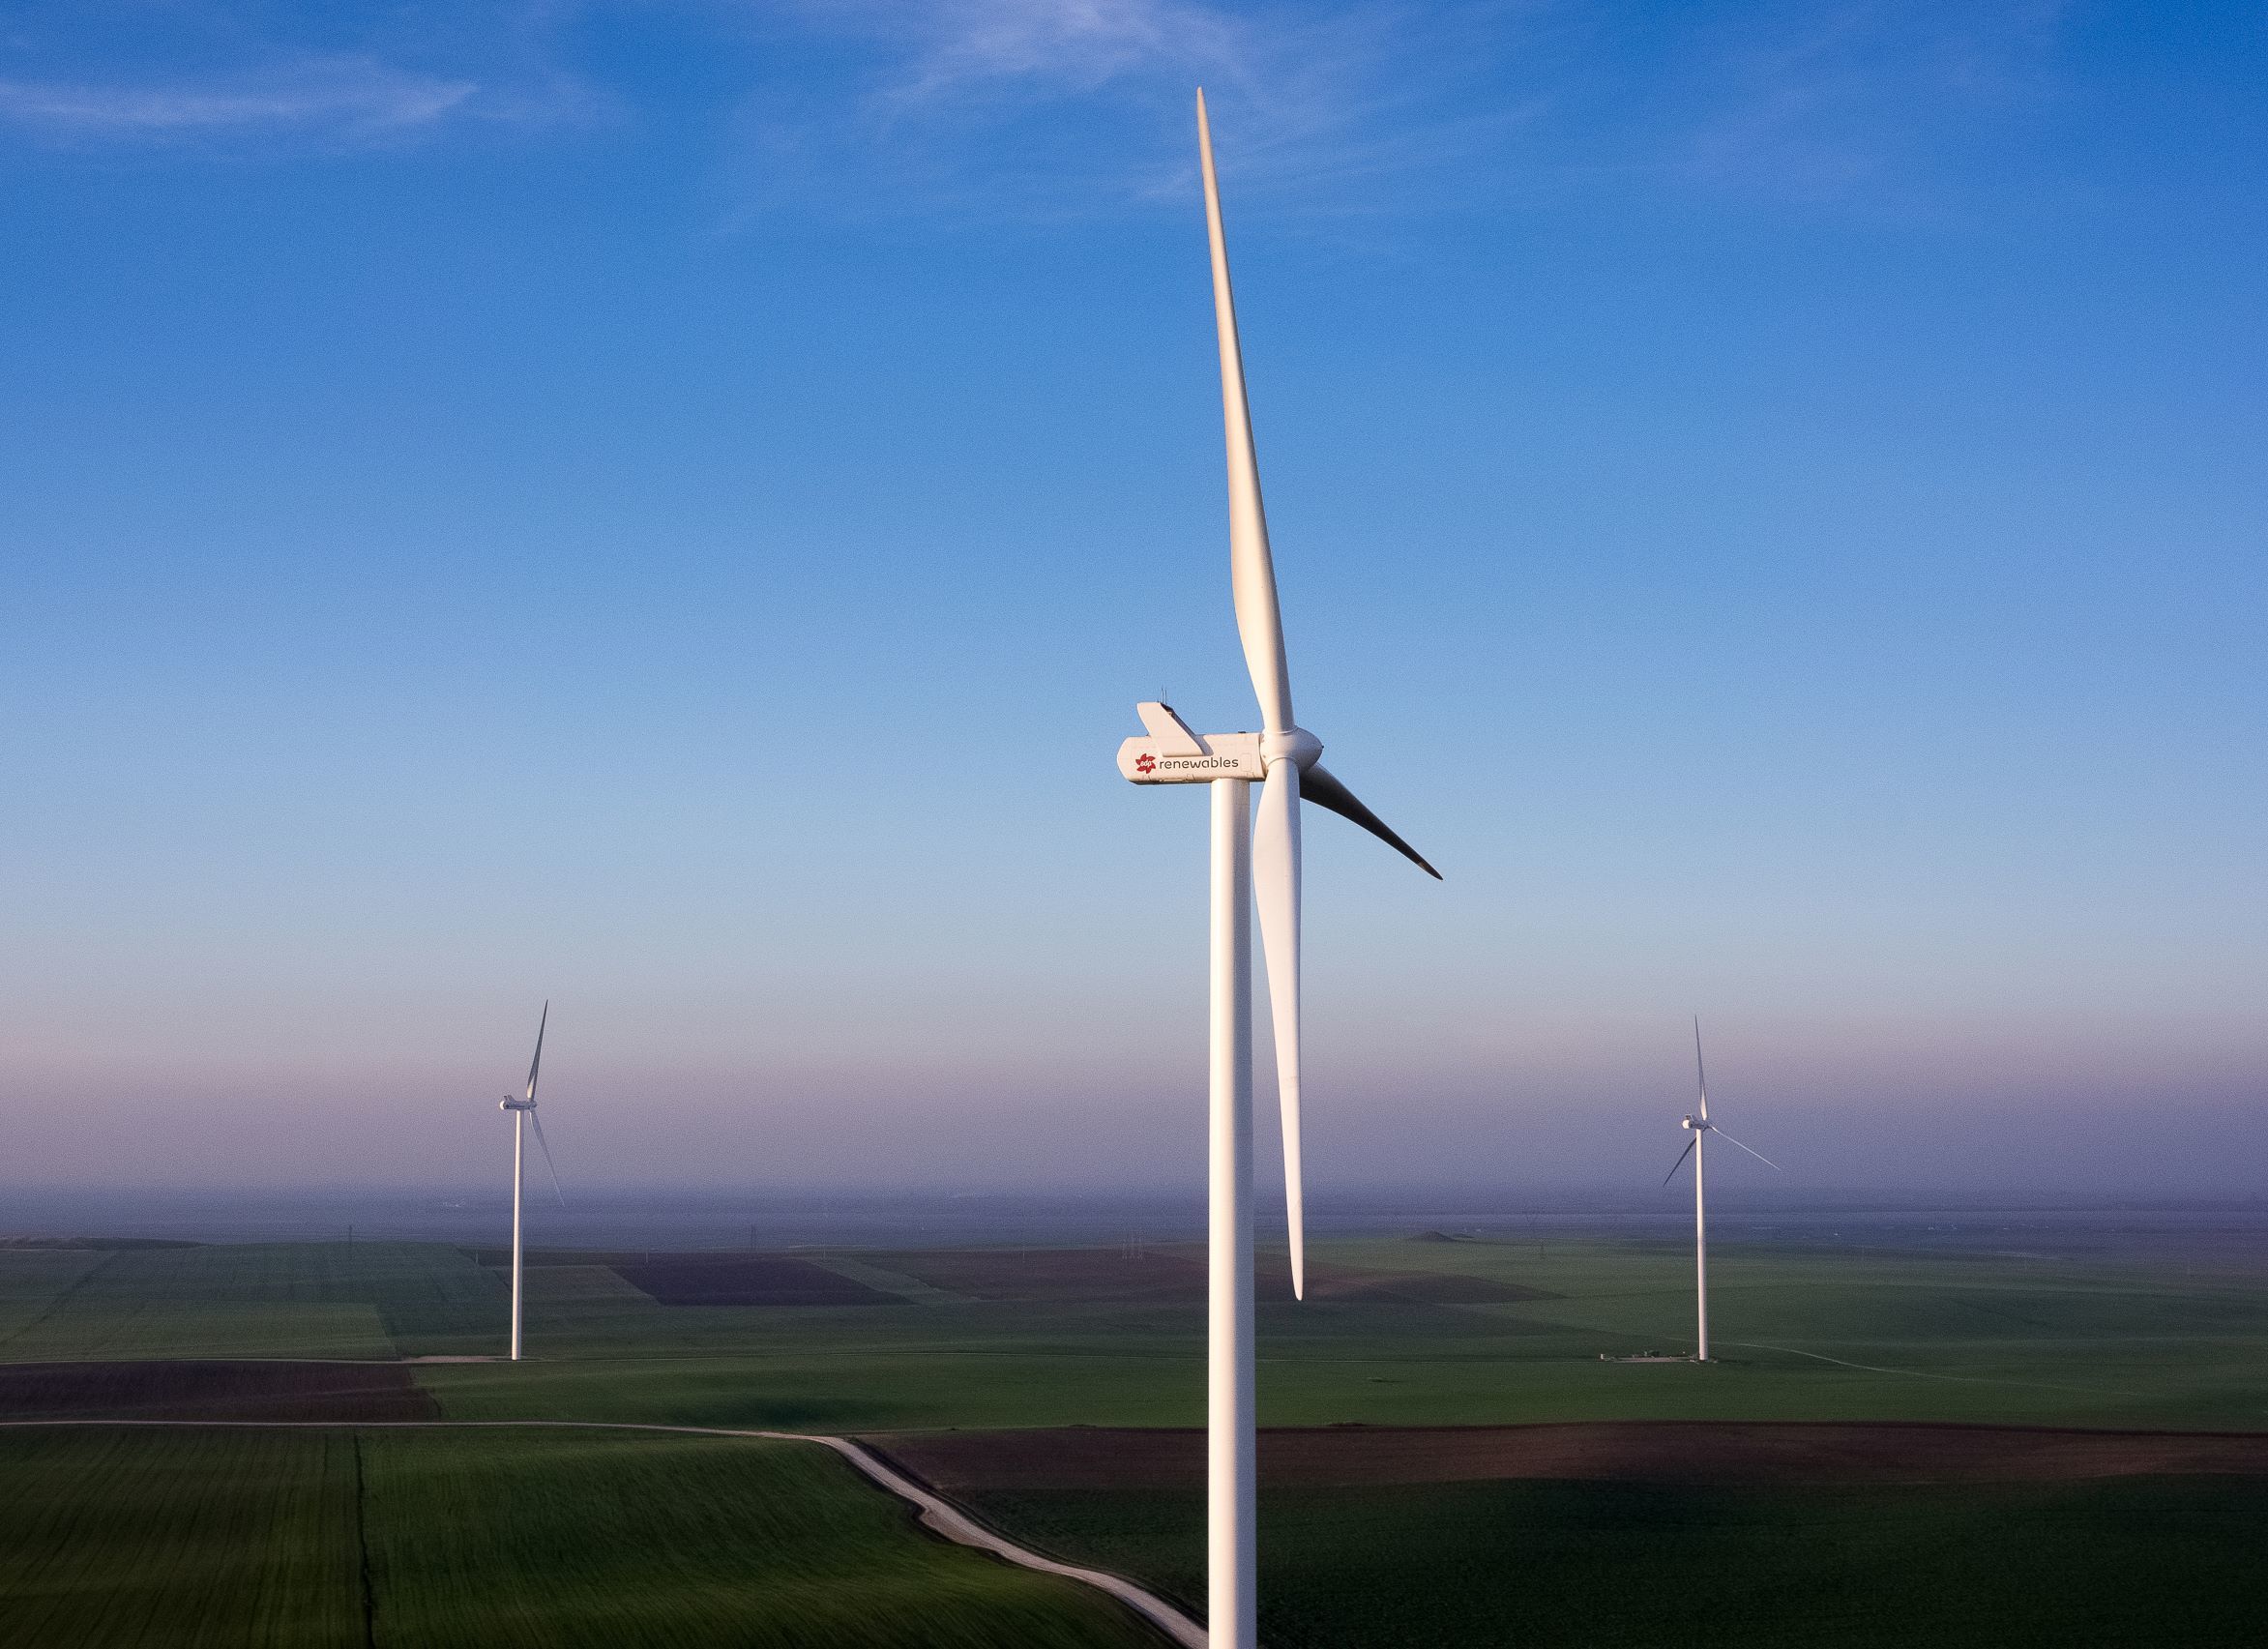 Profitul net al EDPR, al patrulea mare producător de energie eoliană şi solară la nivel global, a crescut anul trecut cu 2%, la 671 de milioane de euro